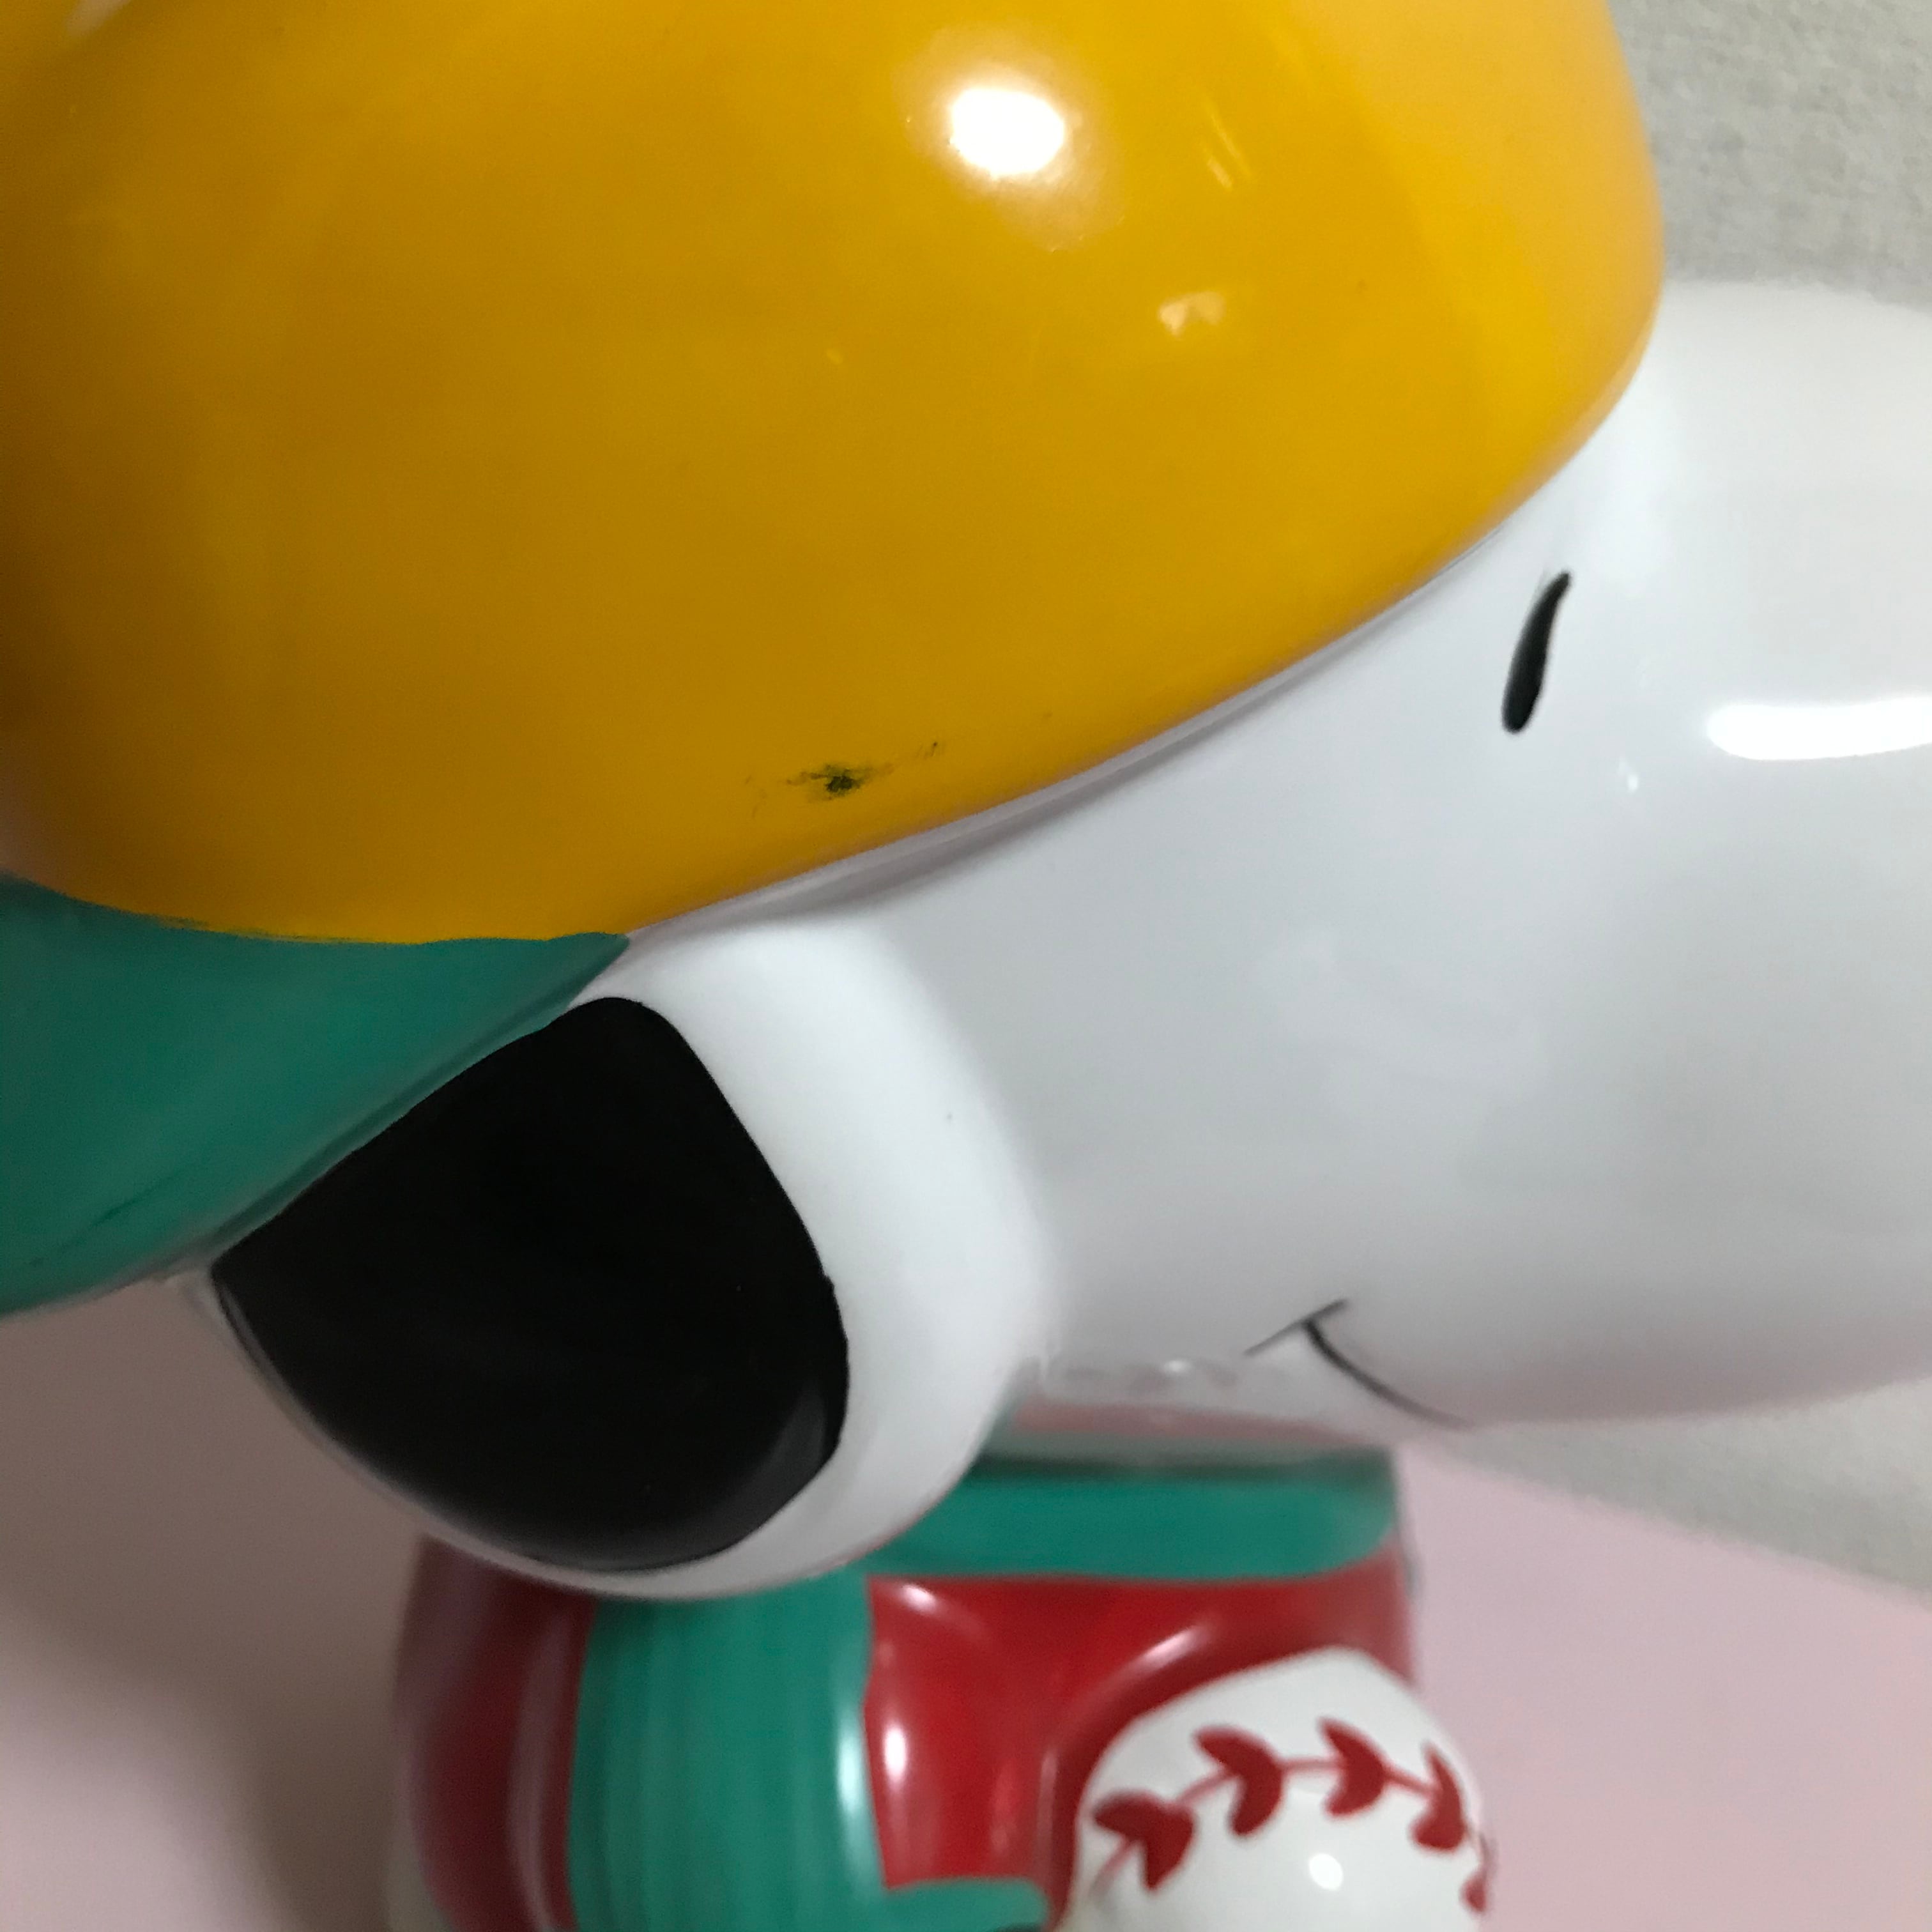 スヌーピー 貯金箱/コインバンク 陶器製 大きい Peanuts Snoopy Vintage Coinbank Ceramic